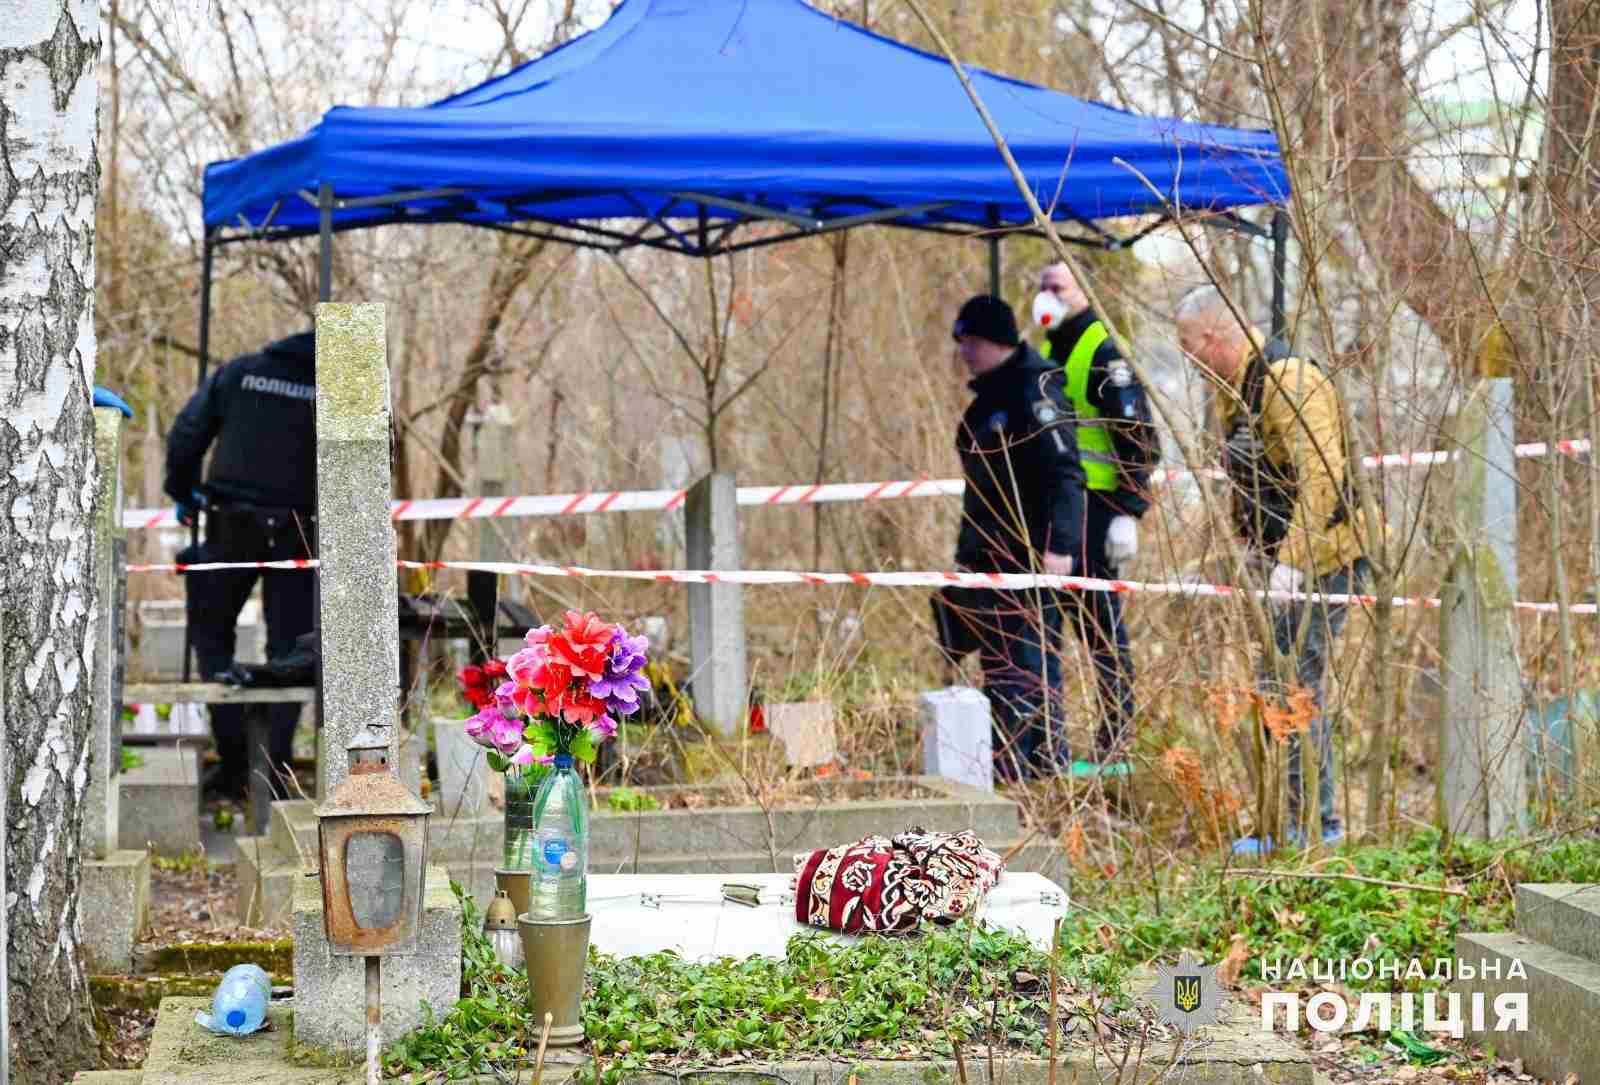 Моторошна знахідка: на кладовищі виявили тіло чоловіка (ФОТО)